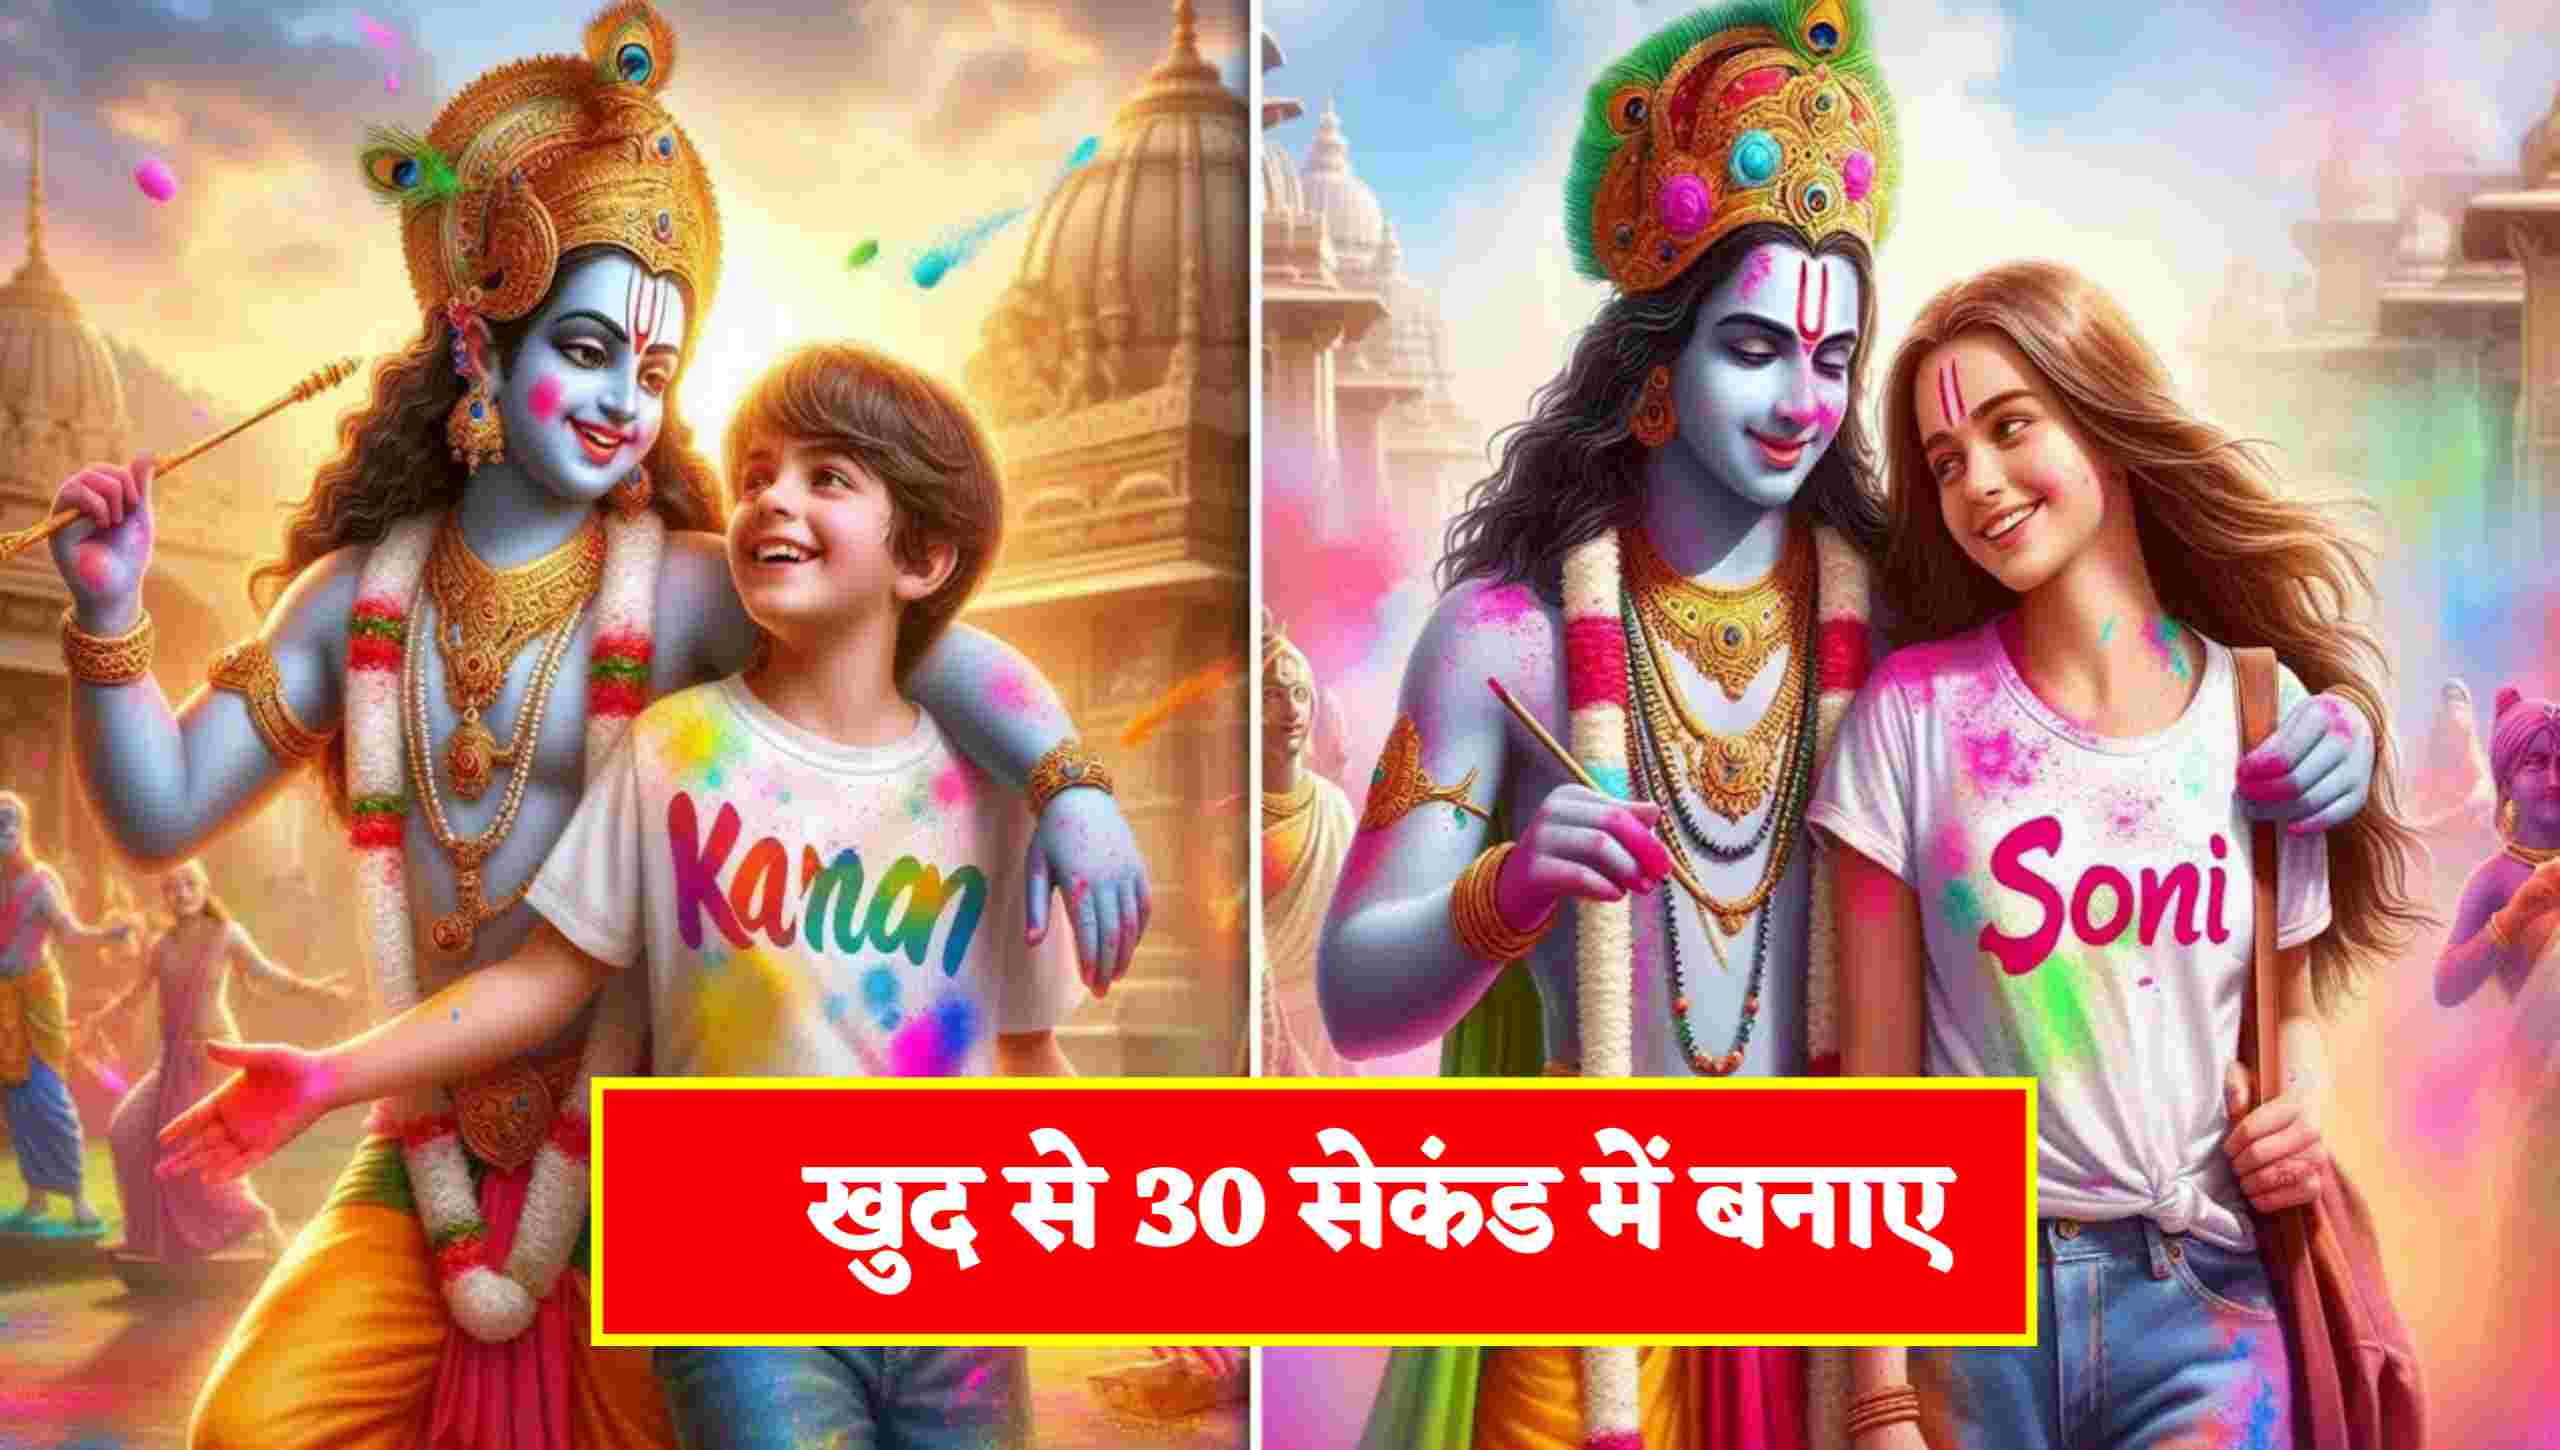 Bing Image Creators Holi with Krishna